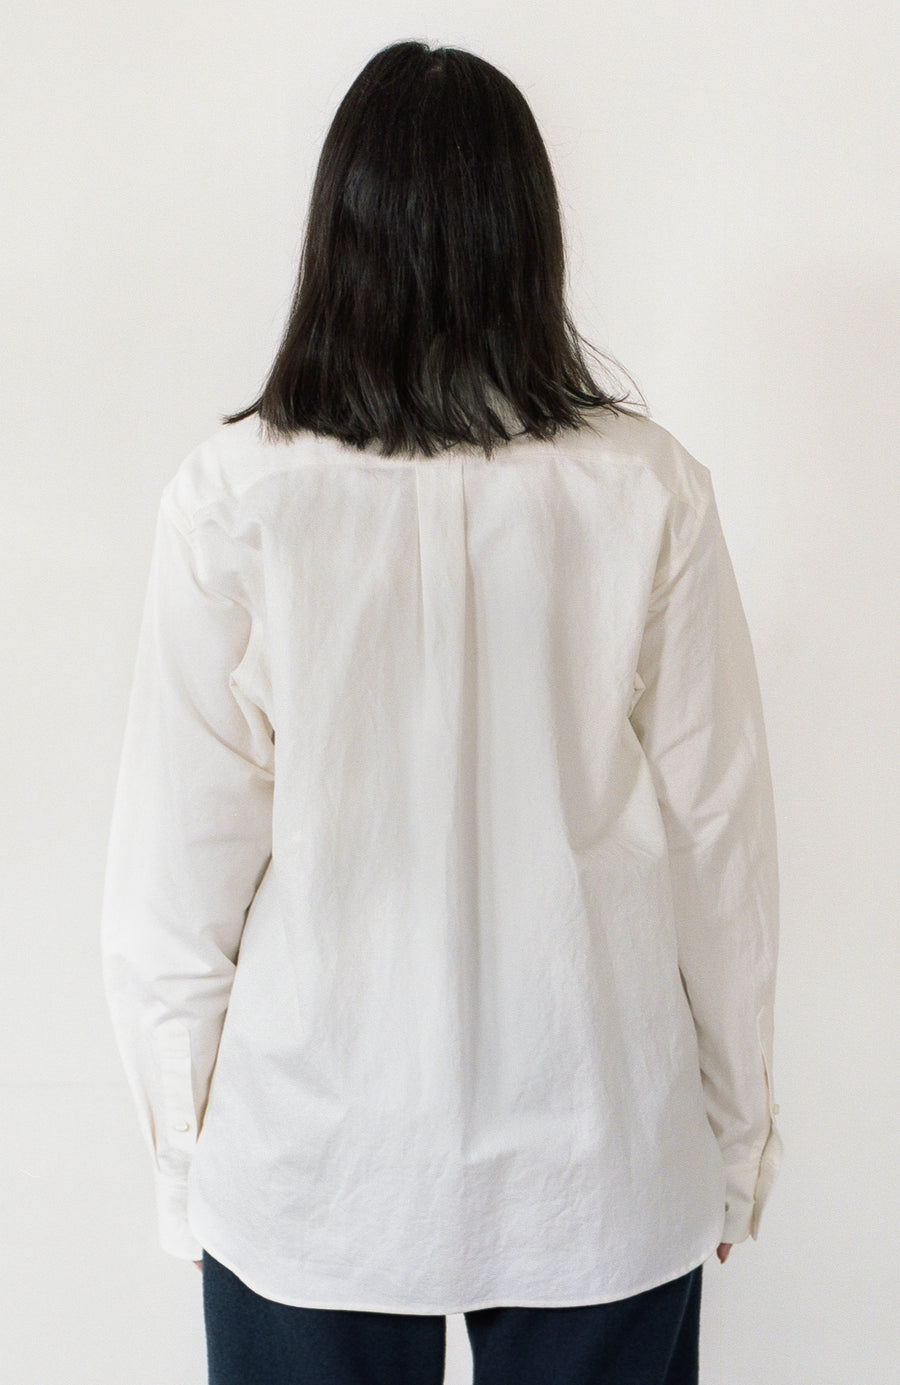 Washi Shirt (white)